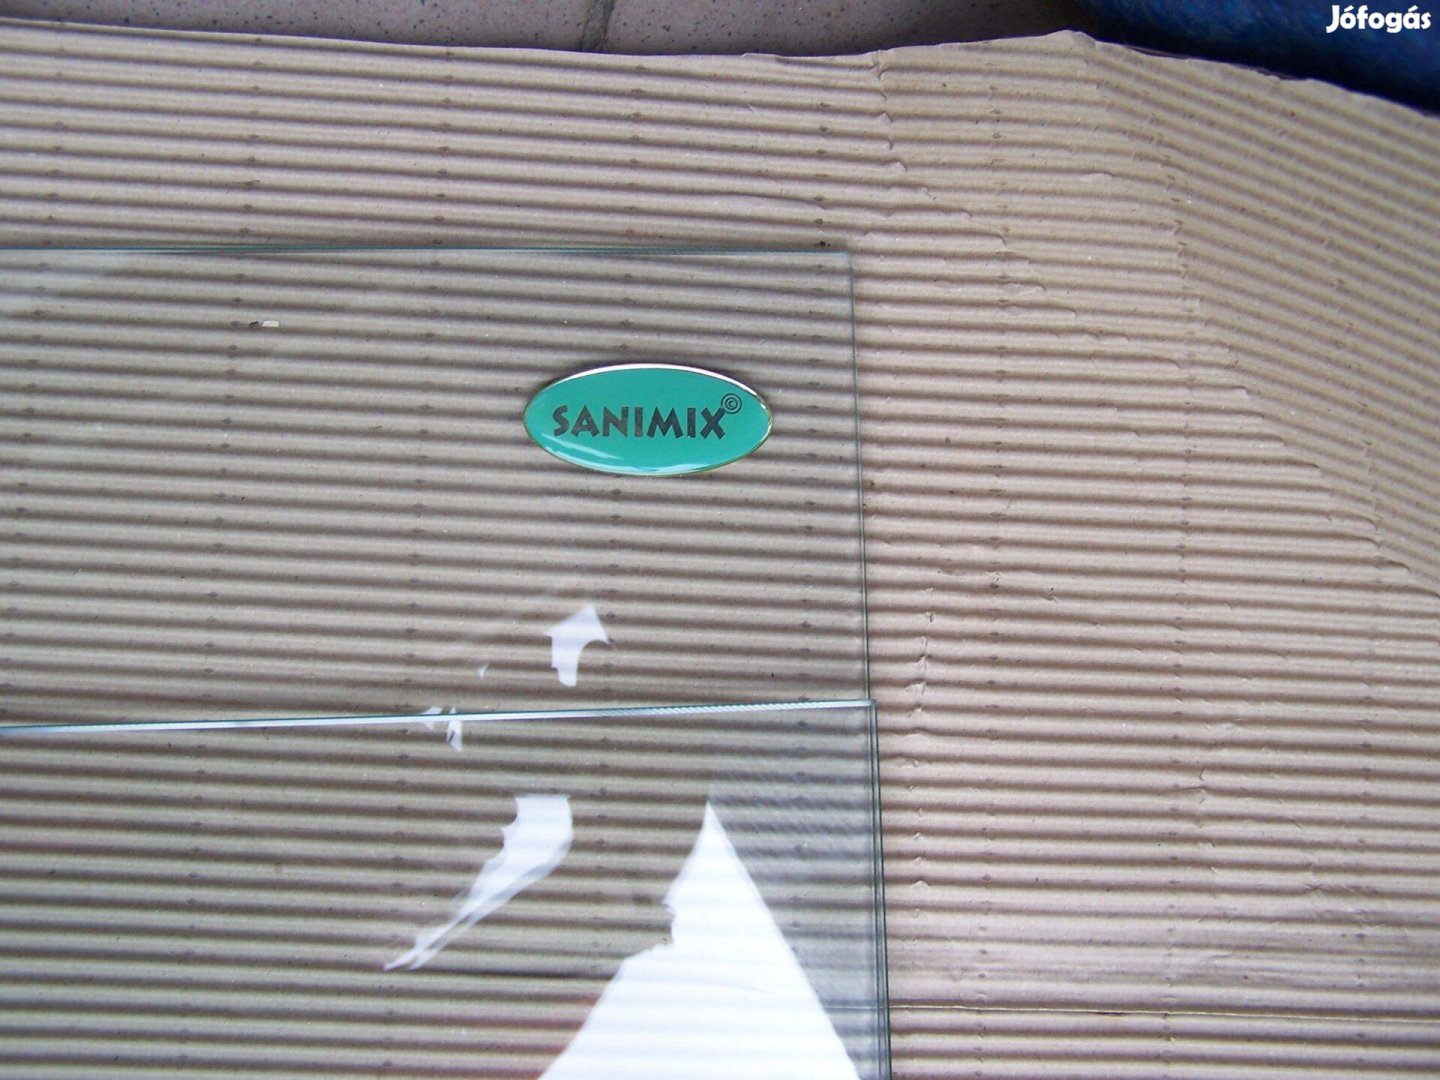 Zuhany kabin Sanimix márkájú